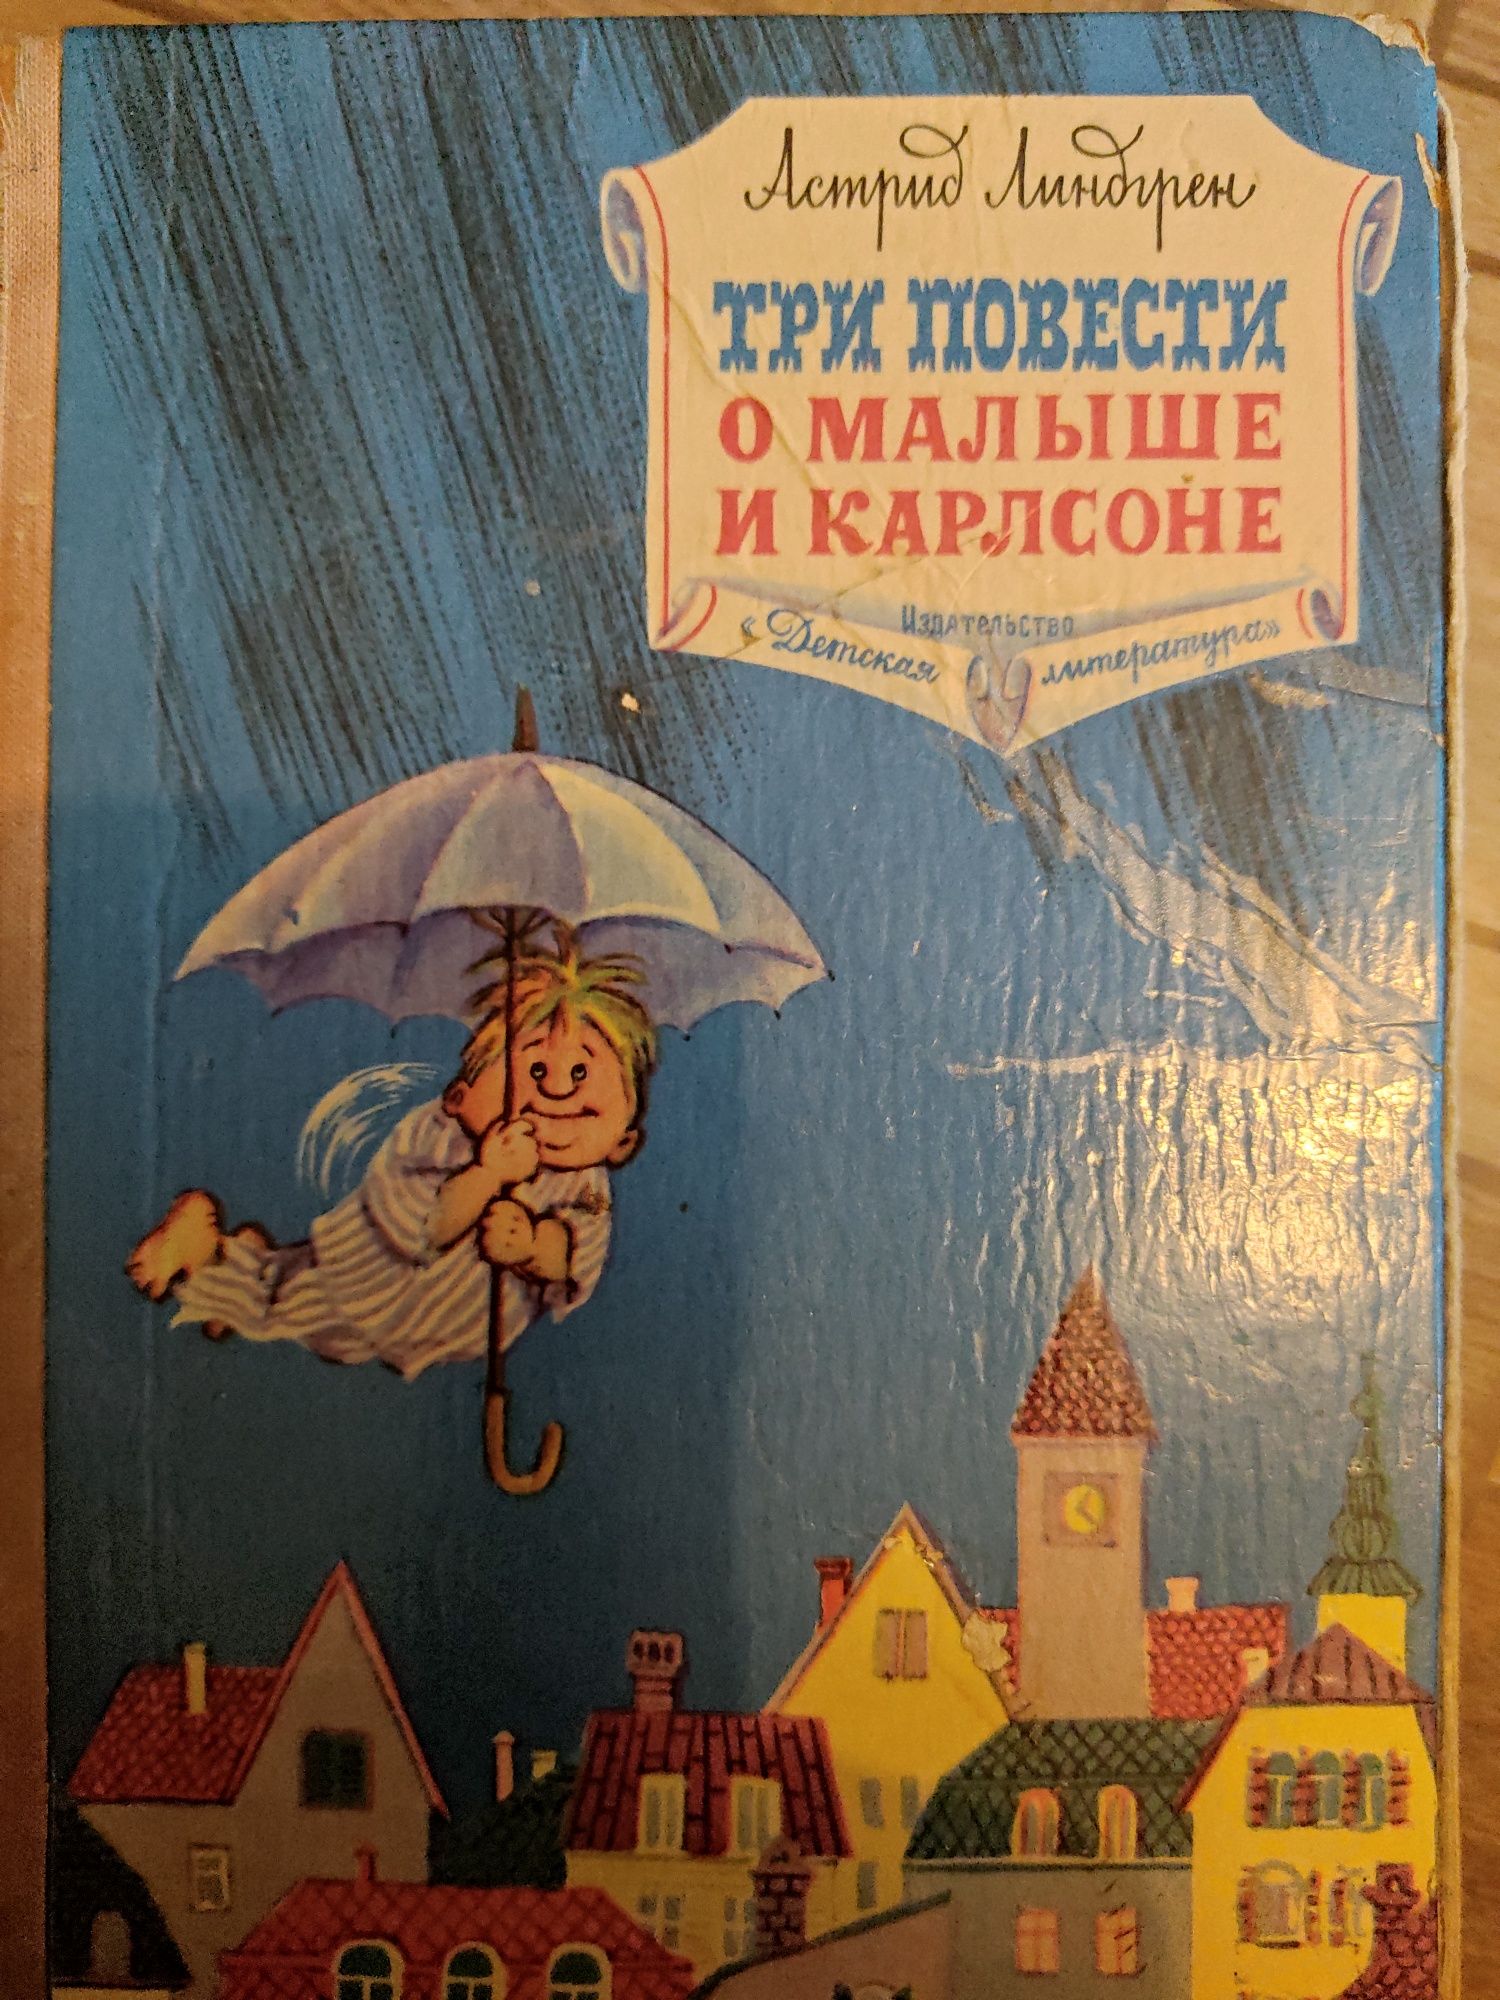 Сказки и книги для детей